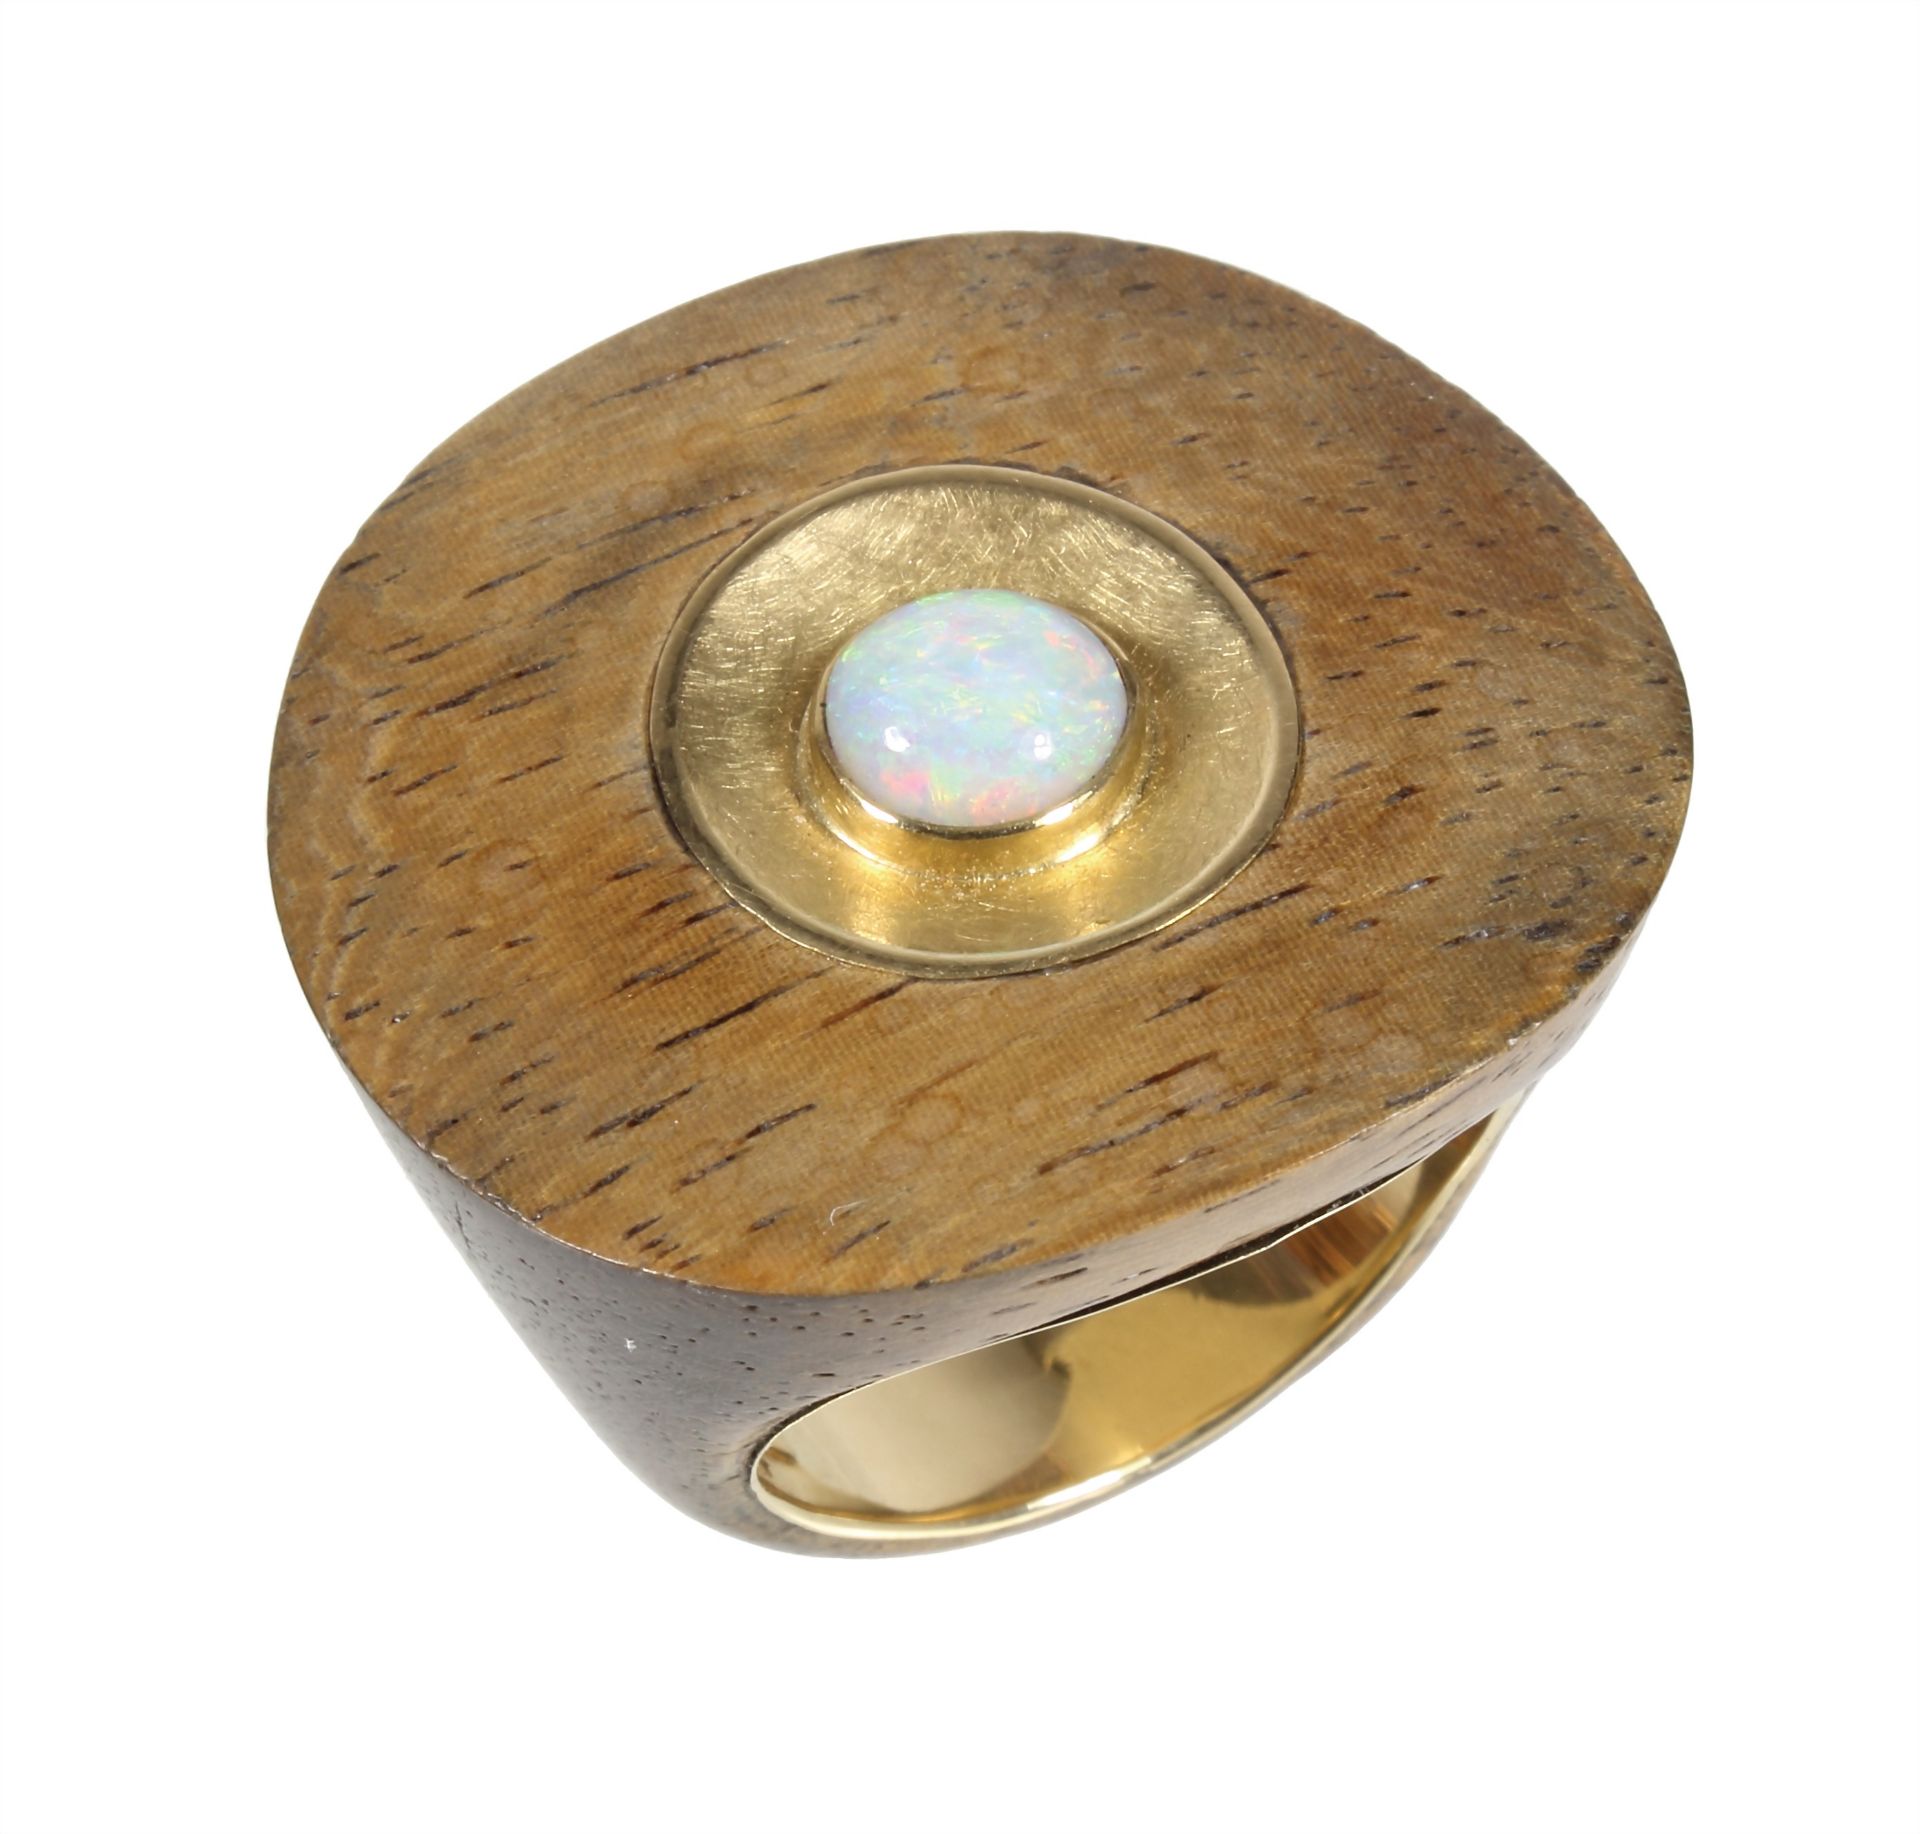 Ring, UNIKAT, GG 750/000, Opal in leuchtenden vorw. grünen Farbtönen, Holzring innen mit Gold ...